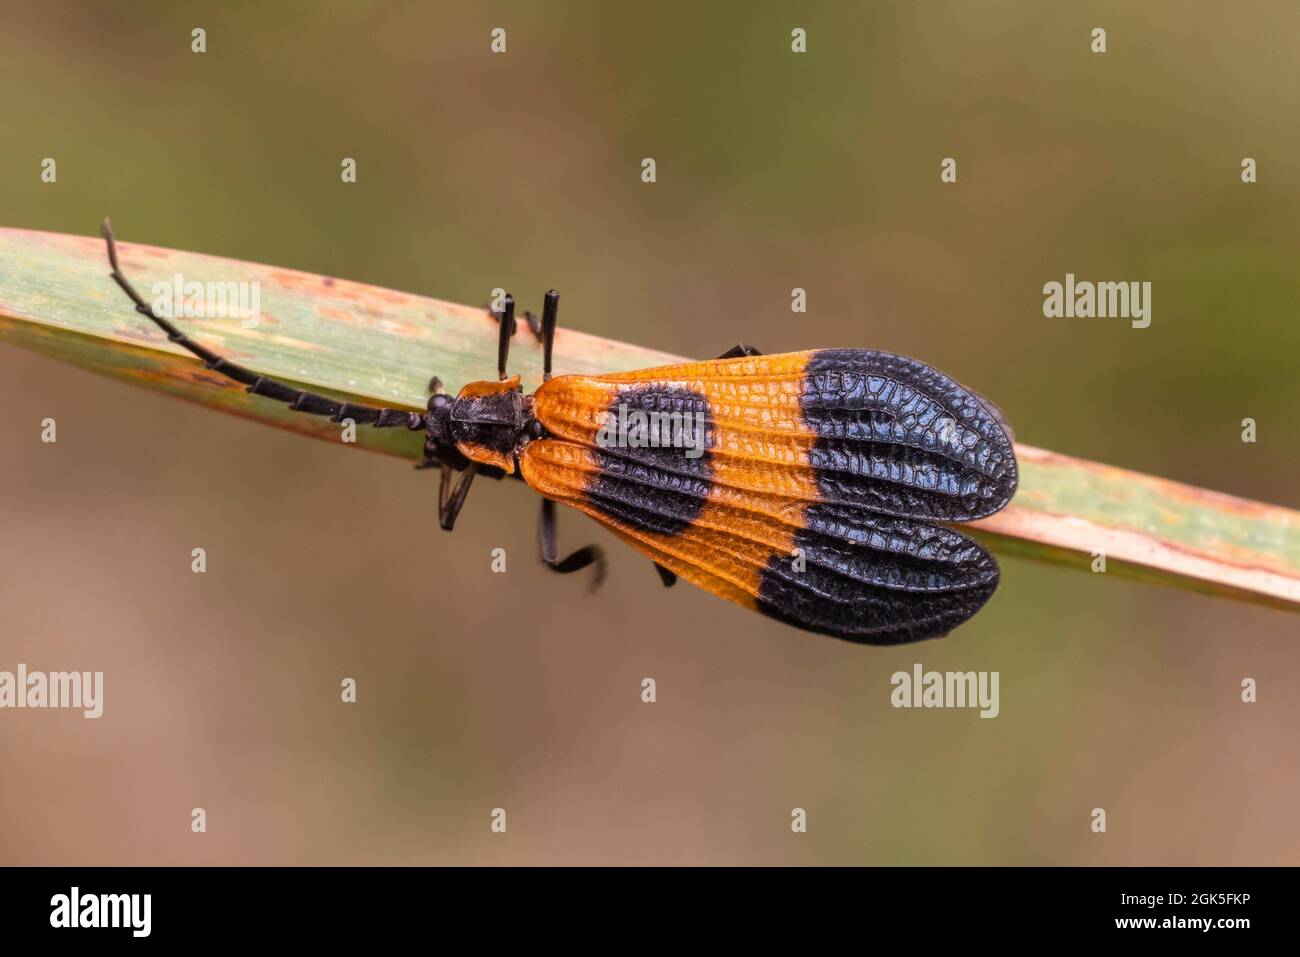 Beetle de banda final con alas de red (Calopteron terminale) Foto de stock